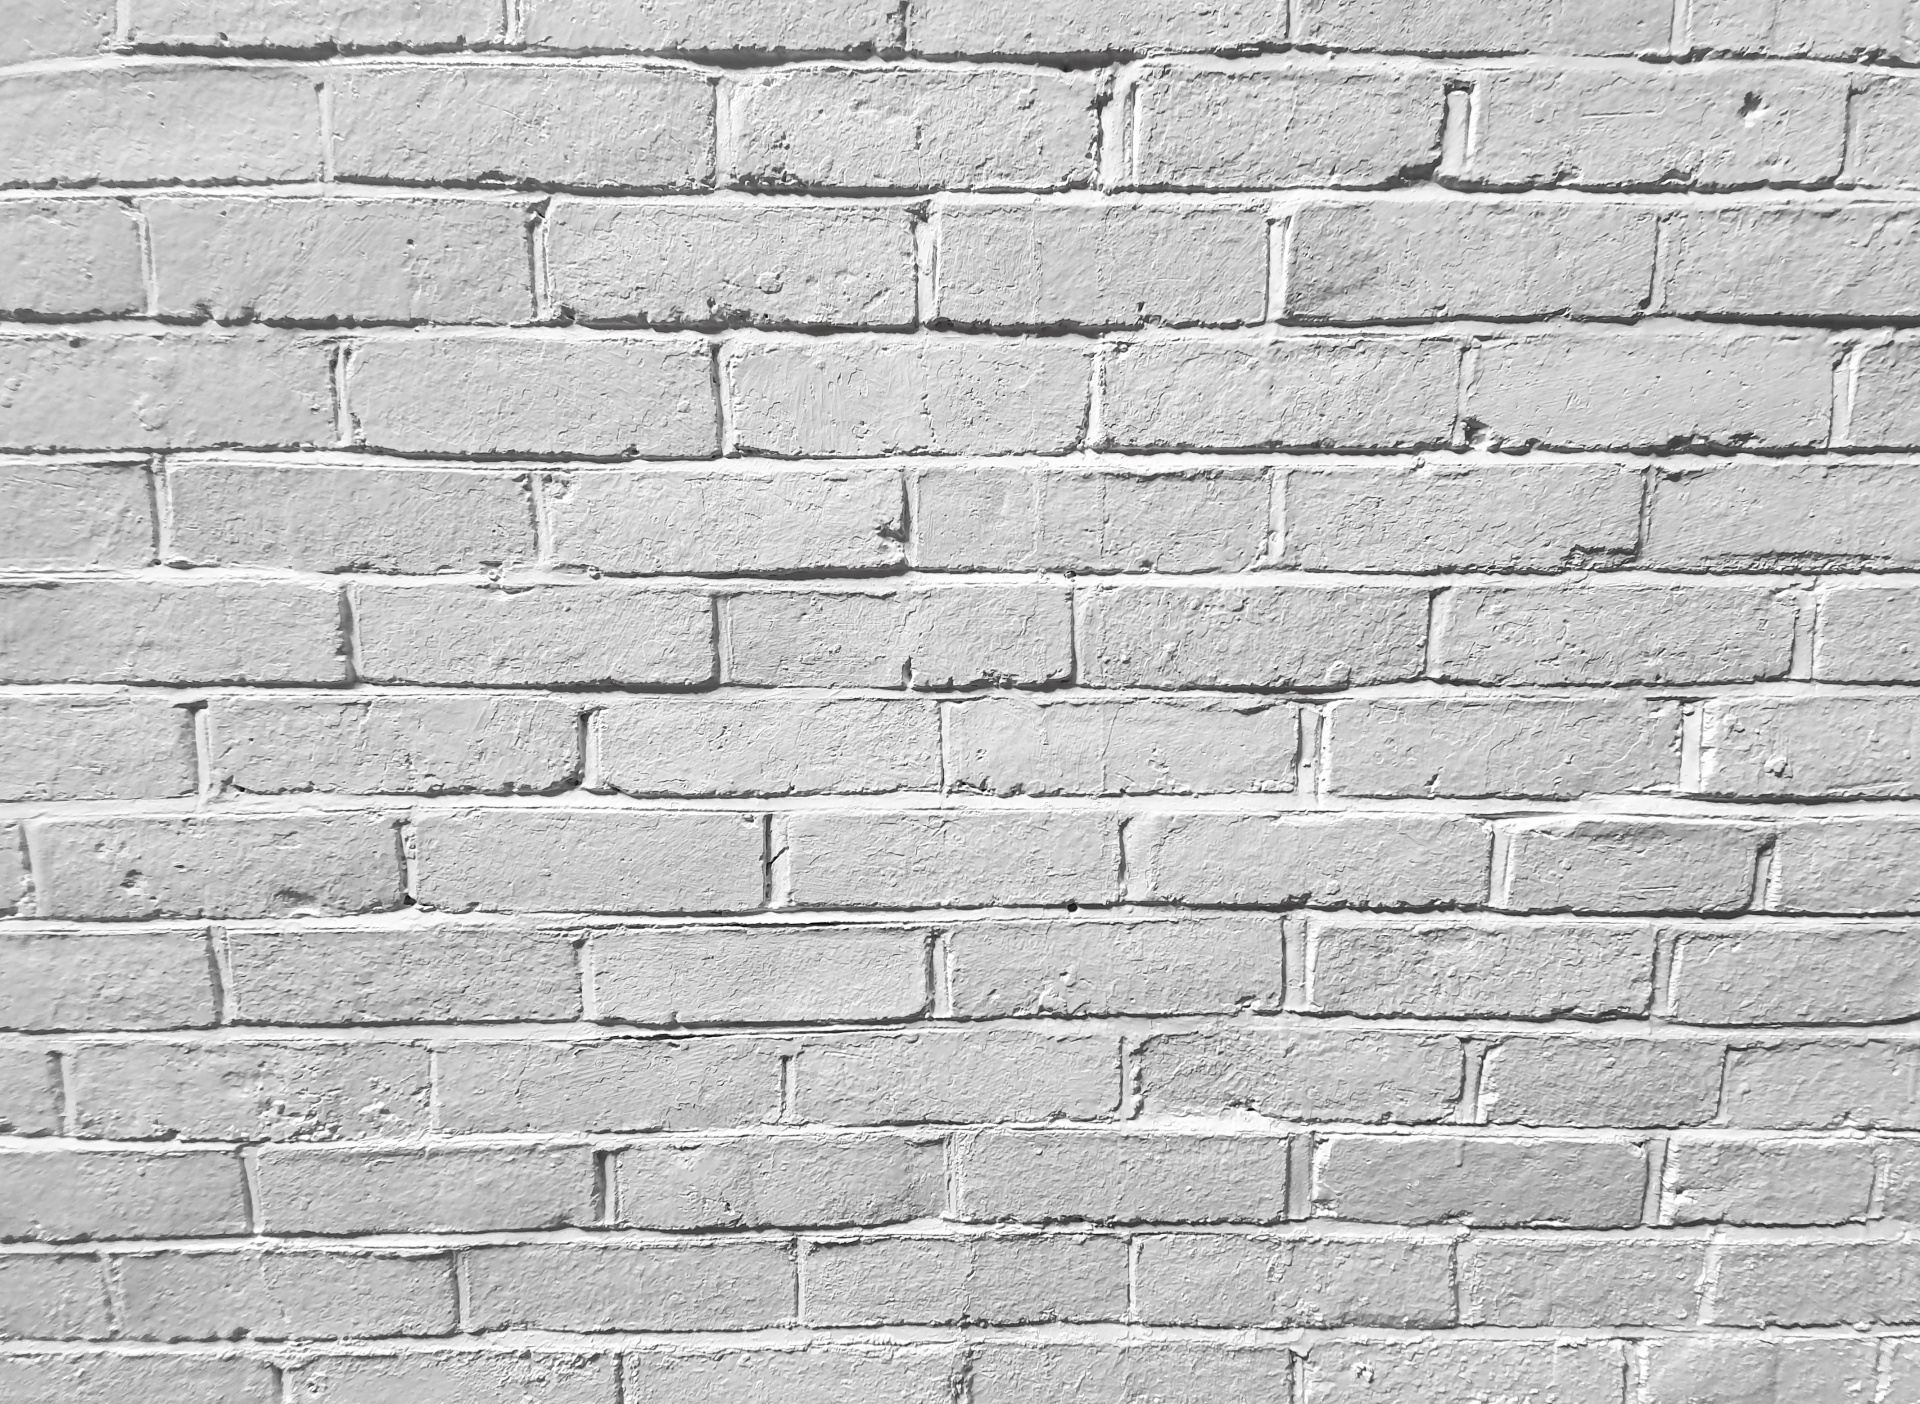 Biały mur z cegły